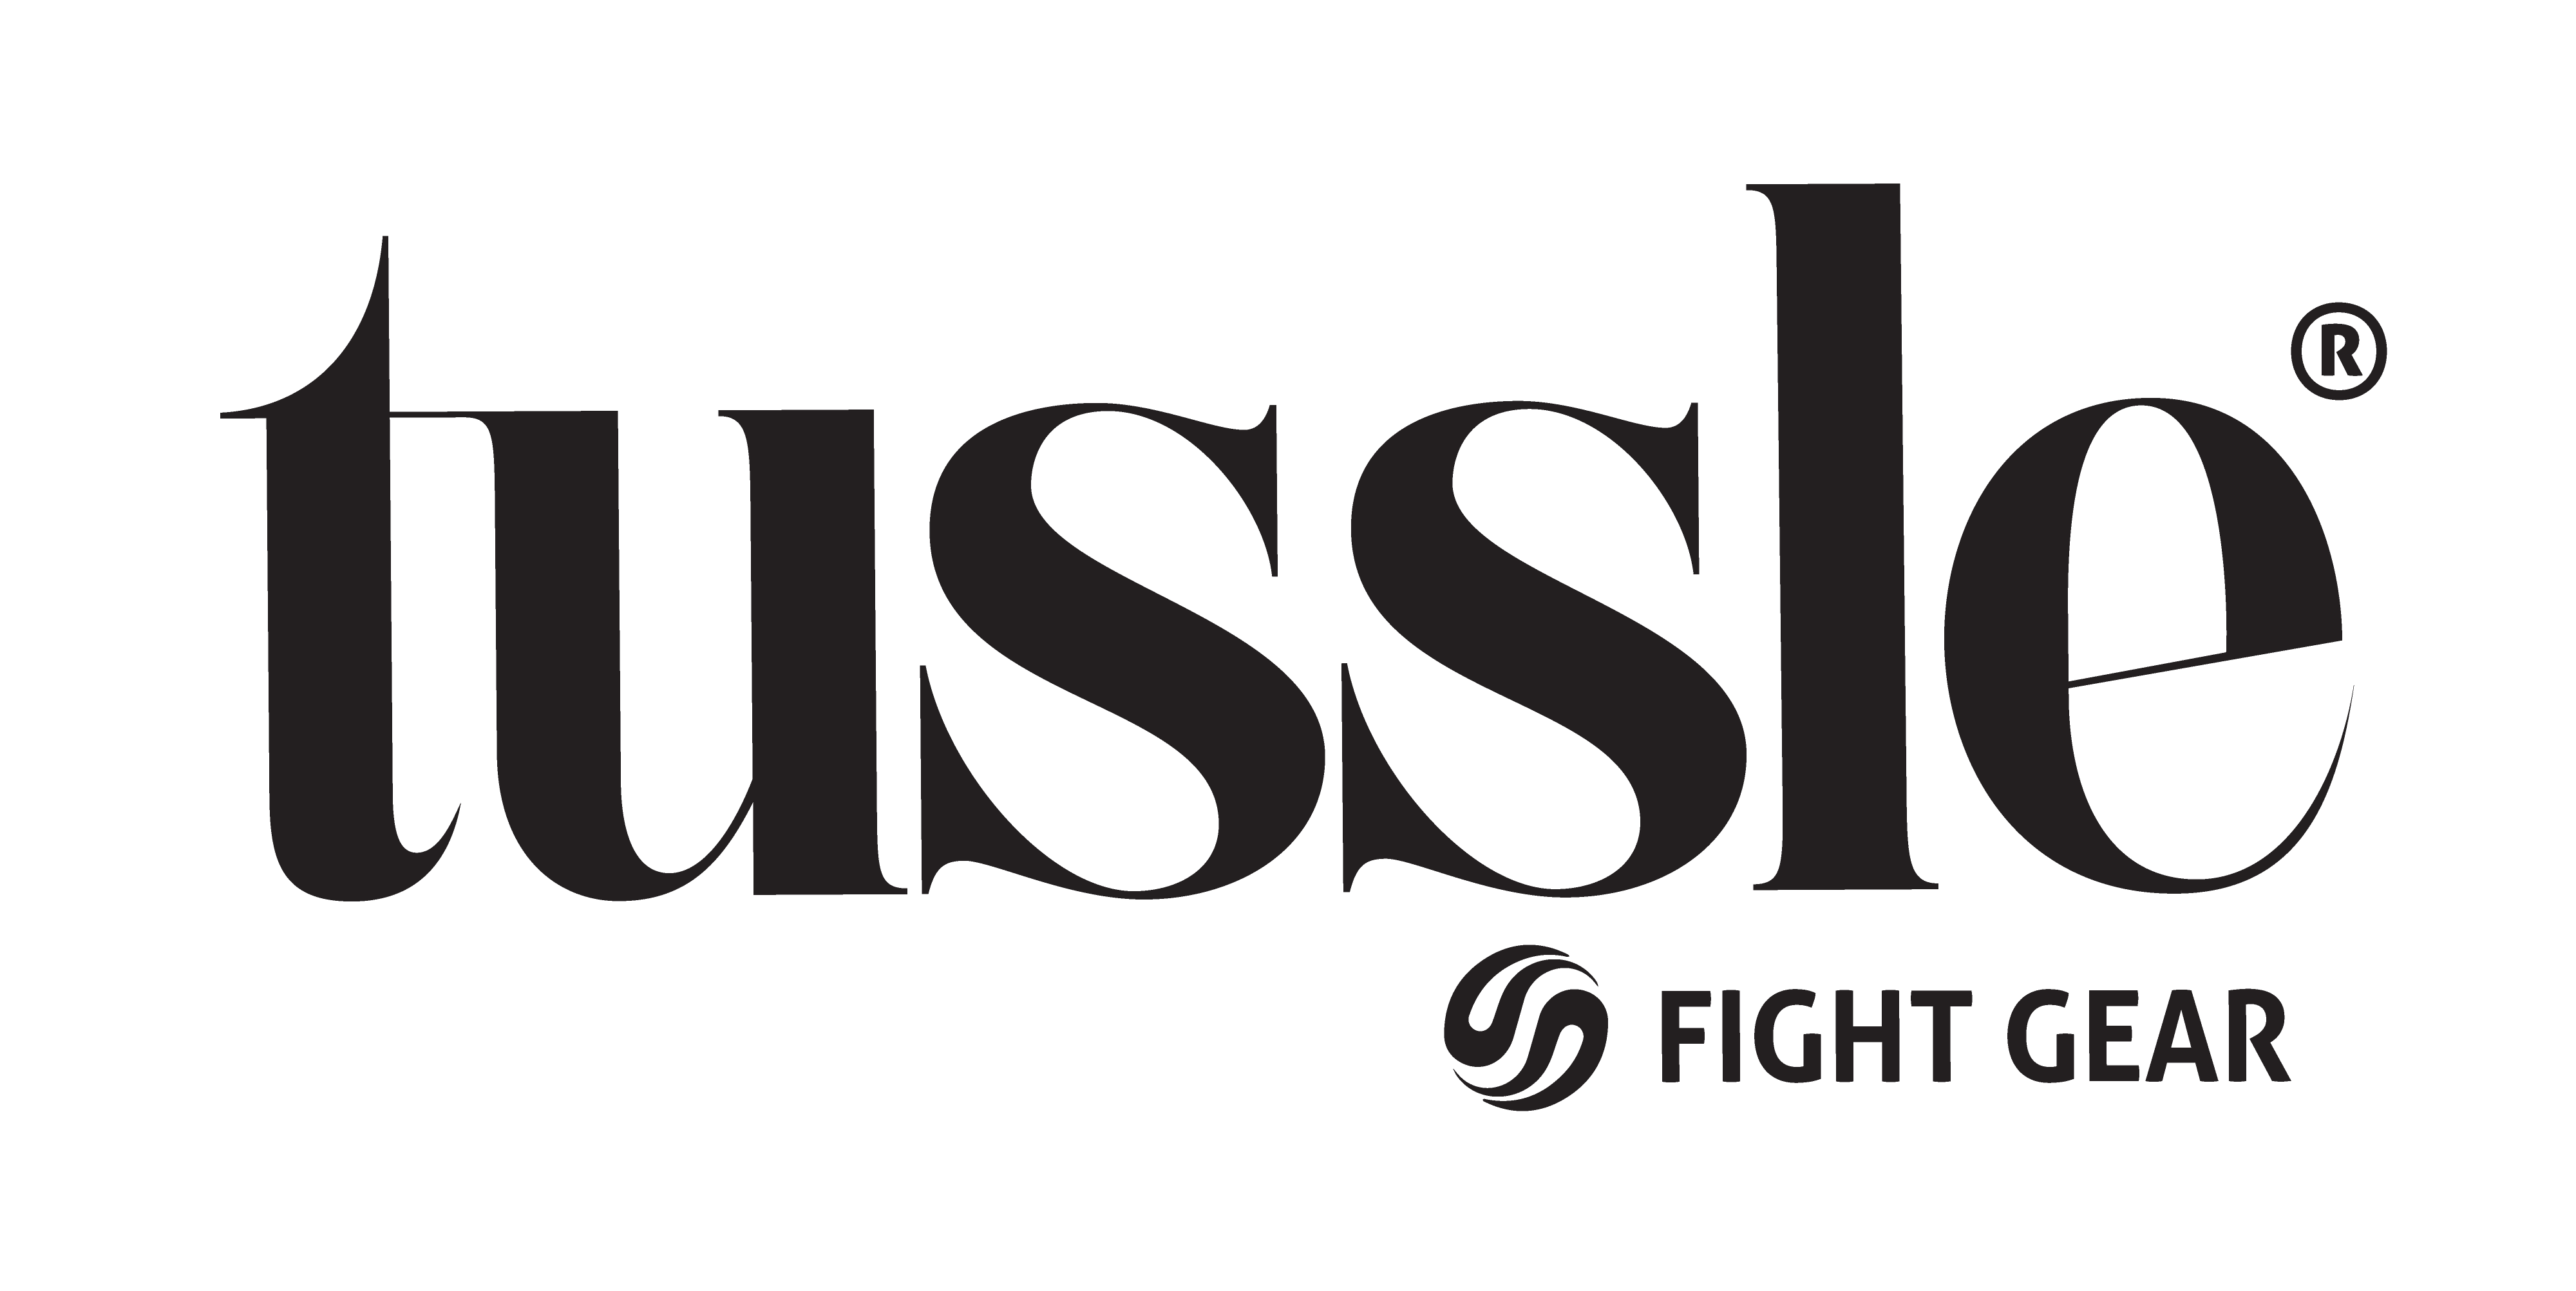 TUSSLE GIFT CARD | Tussle Gear